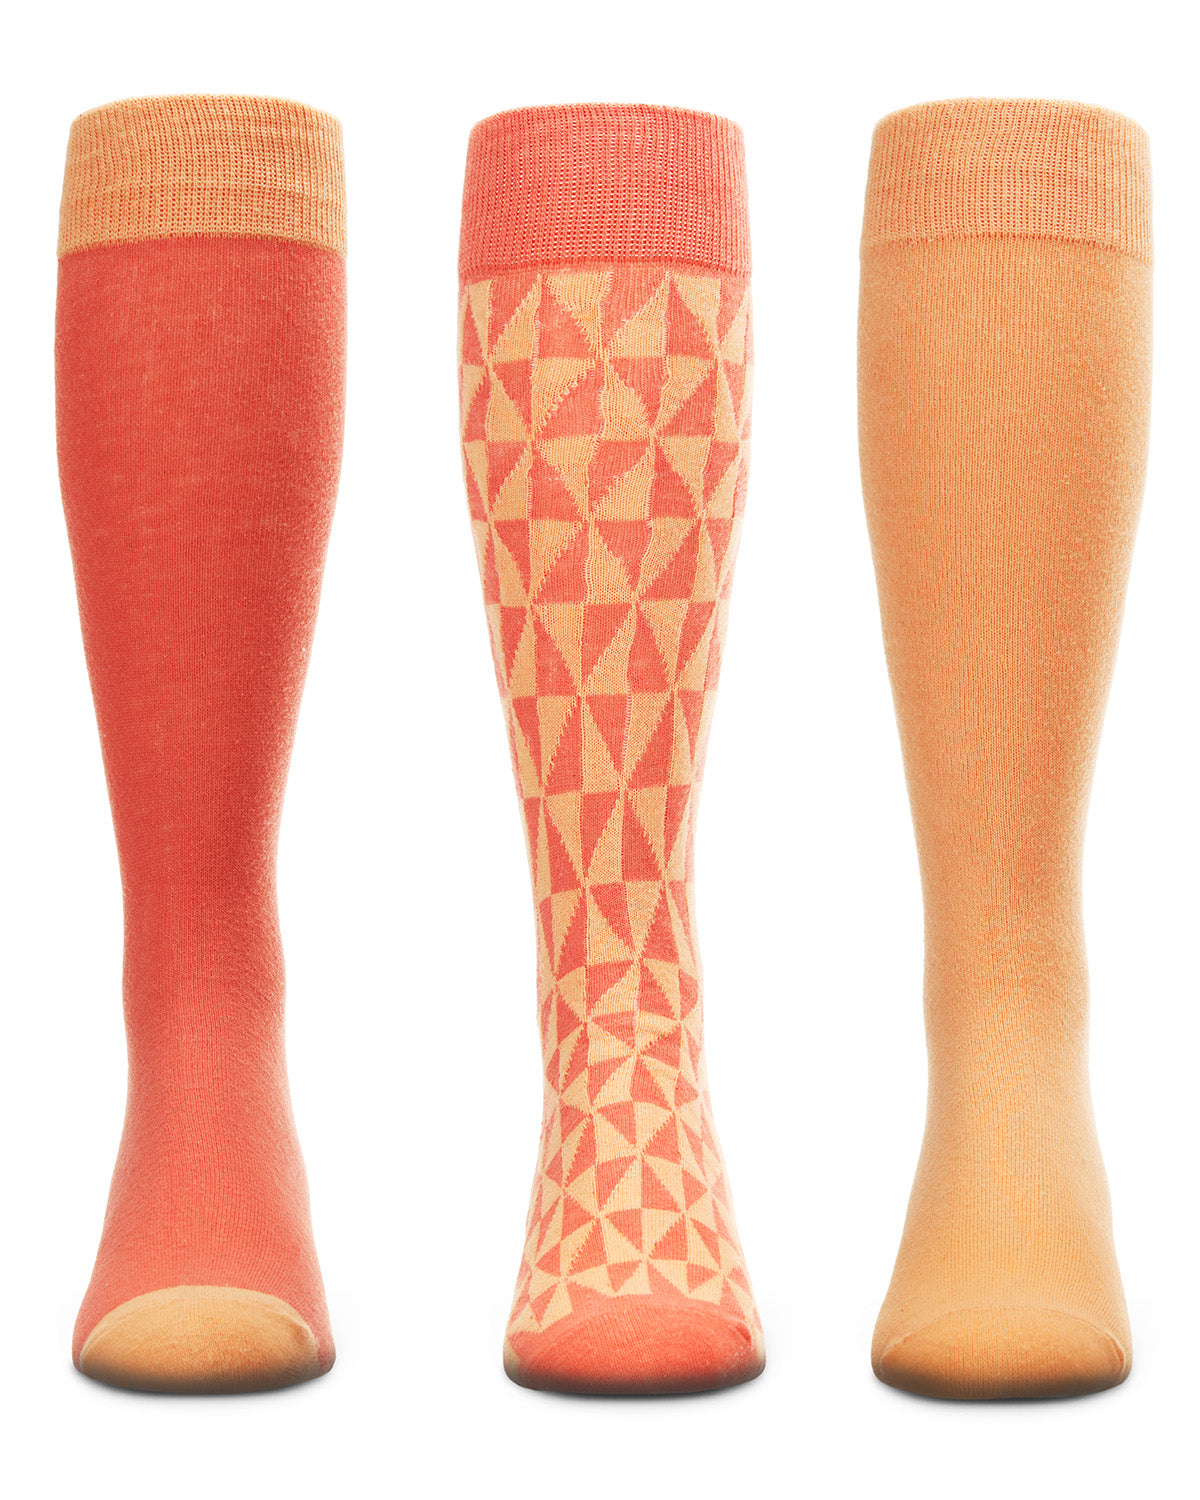 6 Pair Women's Spacedye Heel and Toe Half Cushioned Low Cut Socks